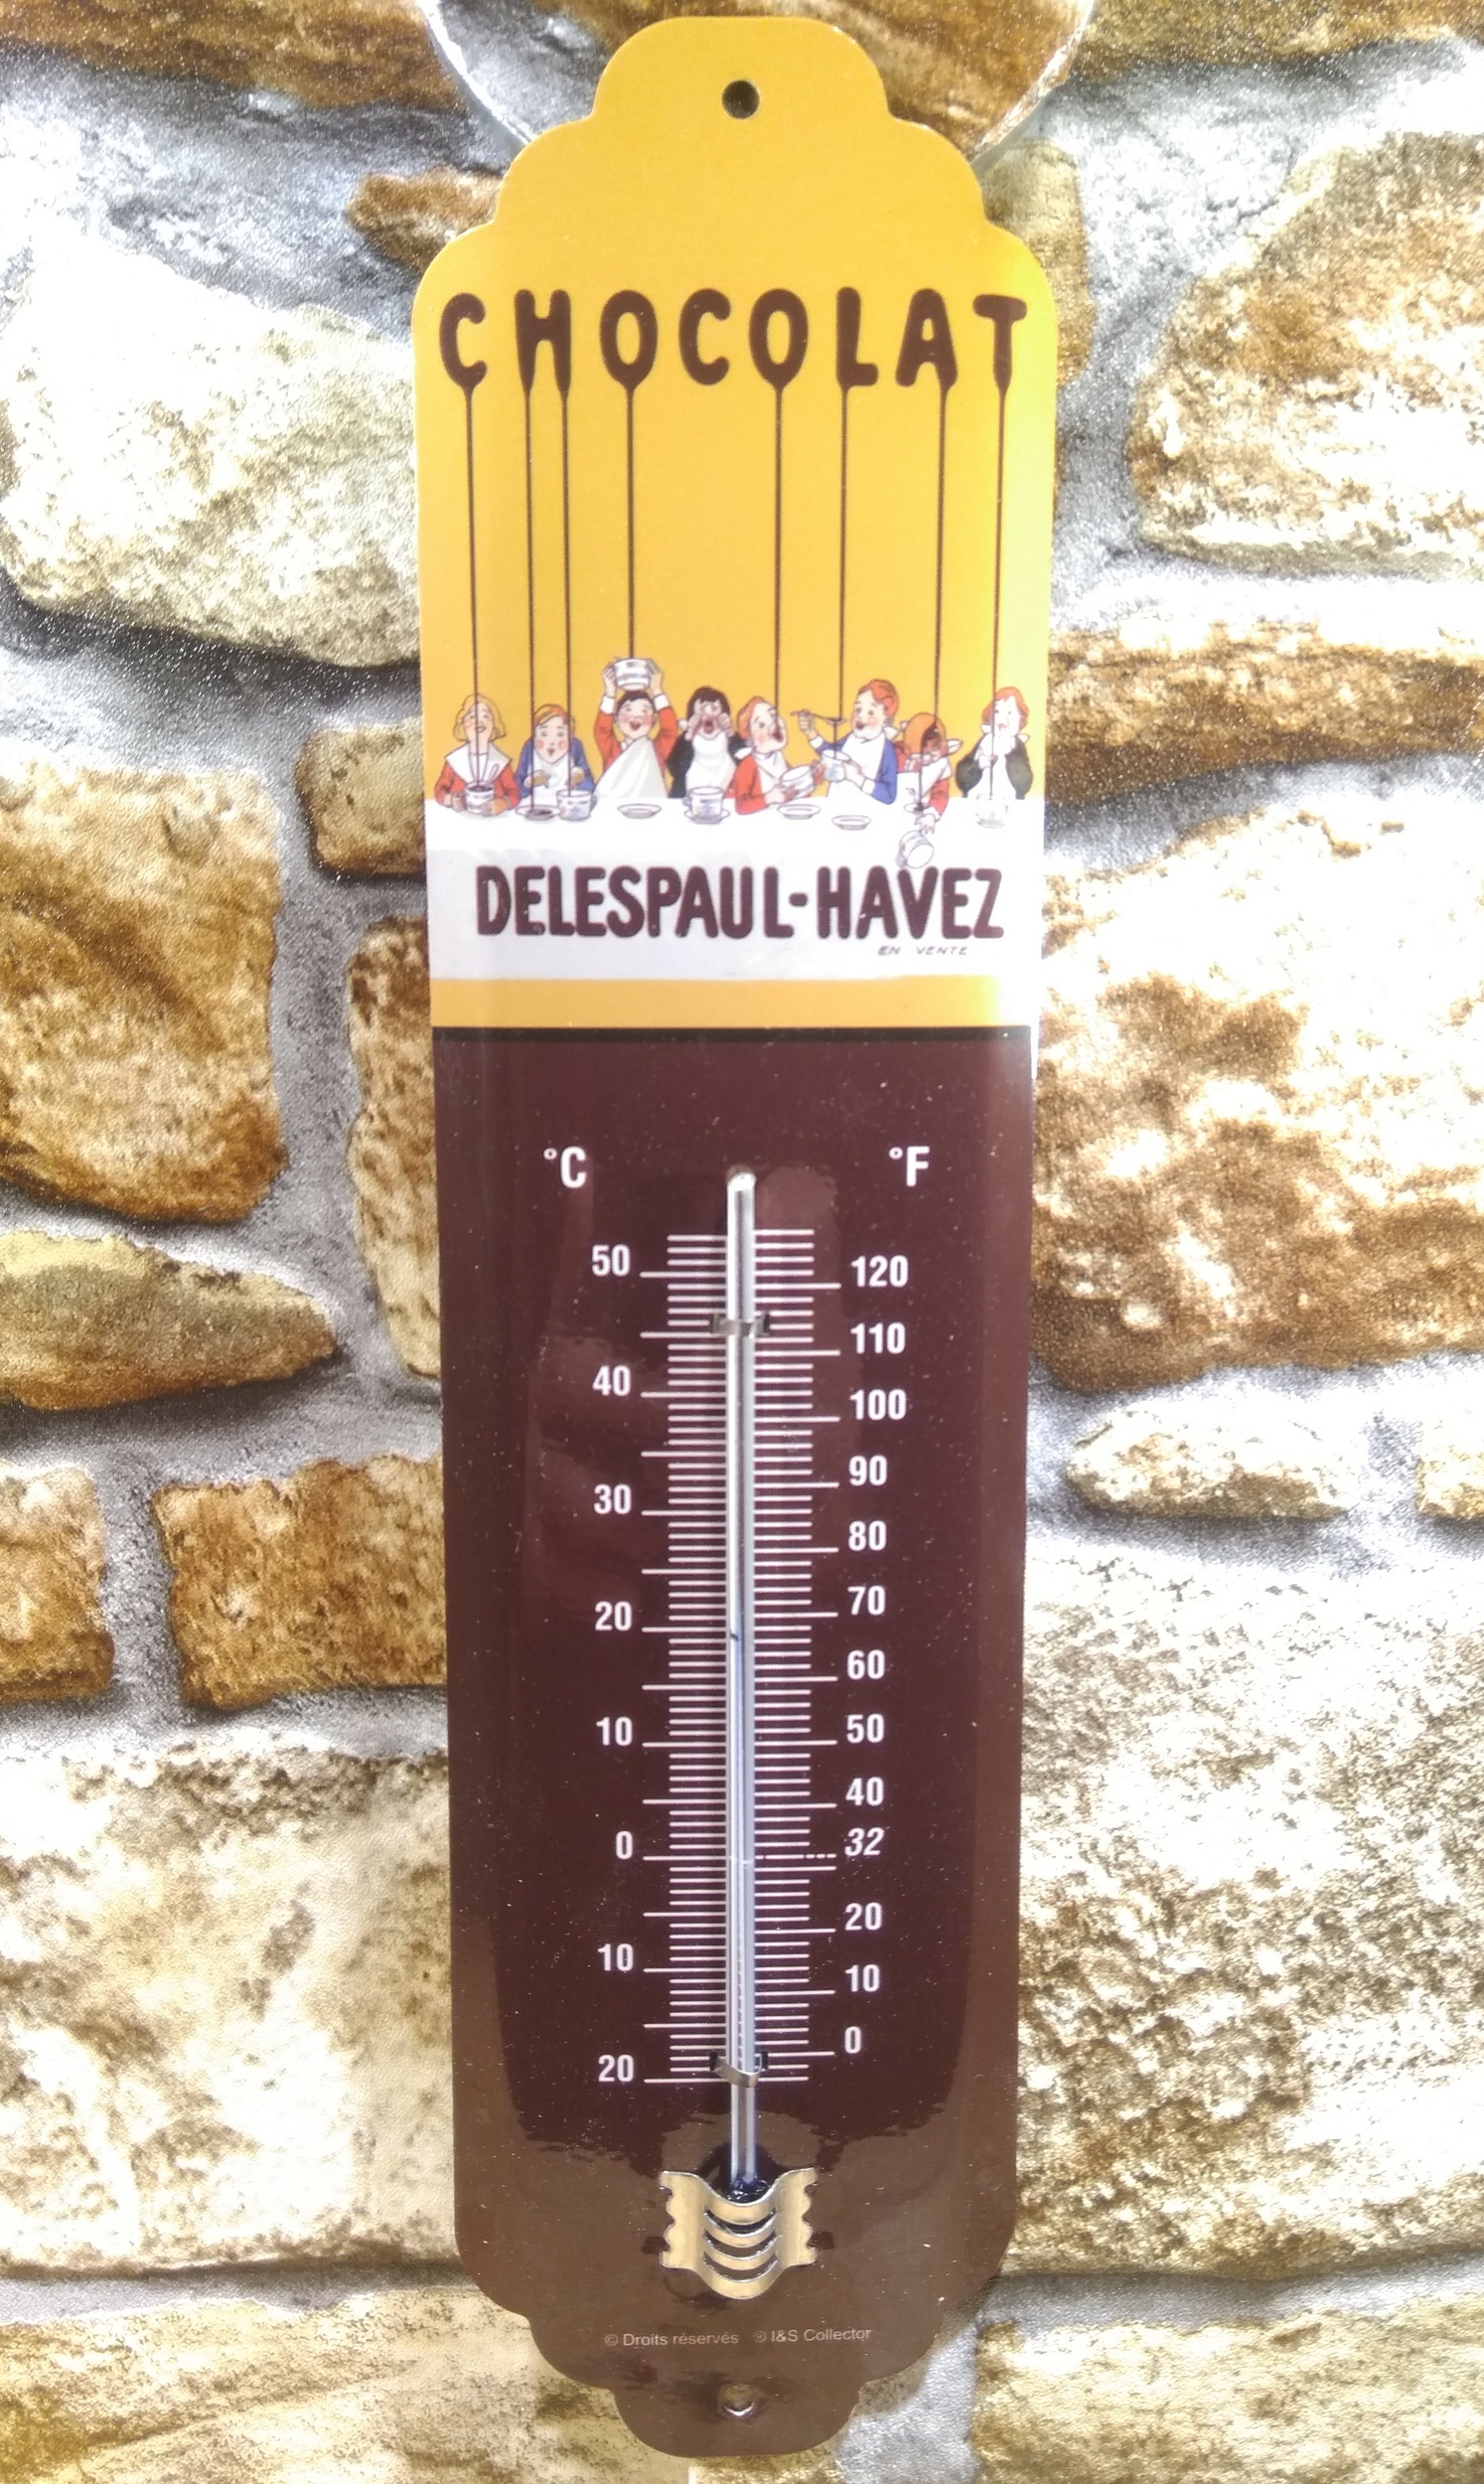 thermomètre mural publicitaire chocolat delespaul-havez